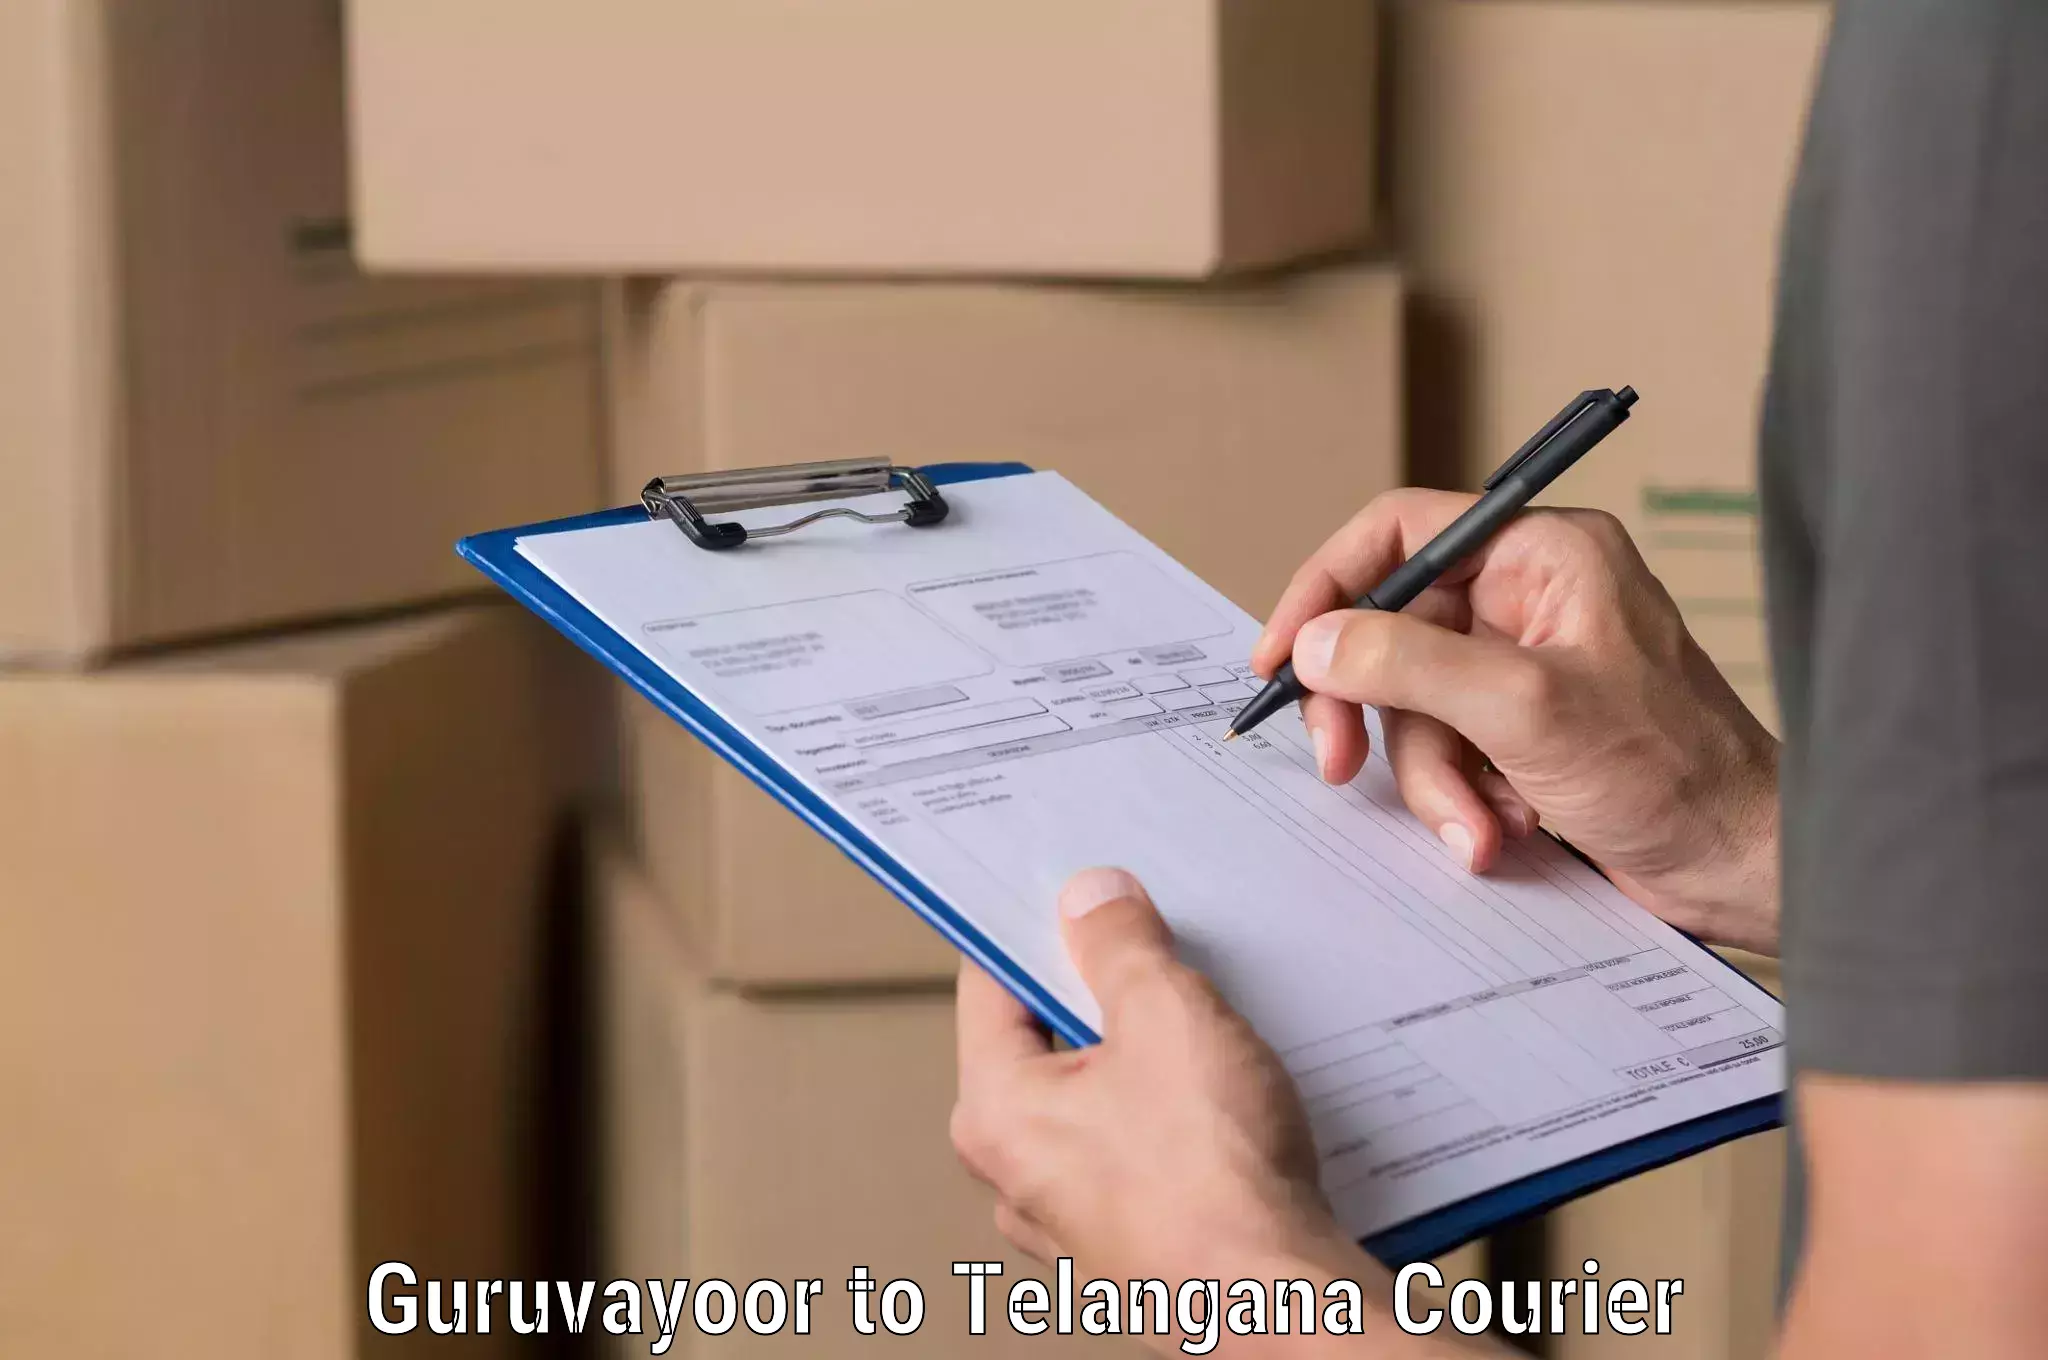 Flexible delivery schedules Guruvayoor to Yellareddy